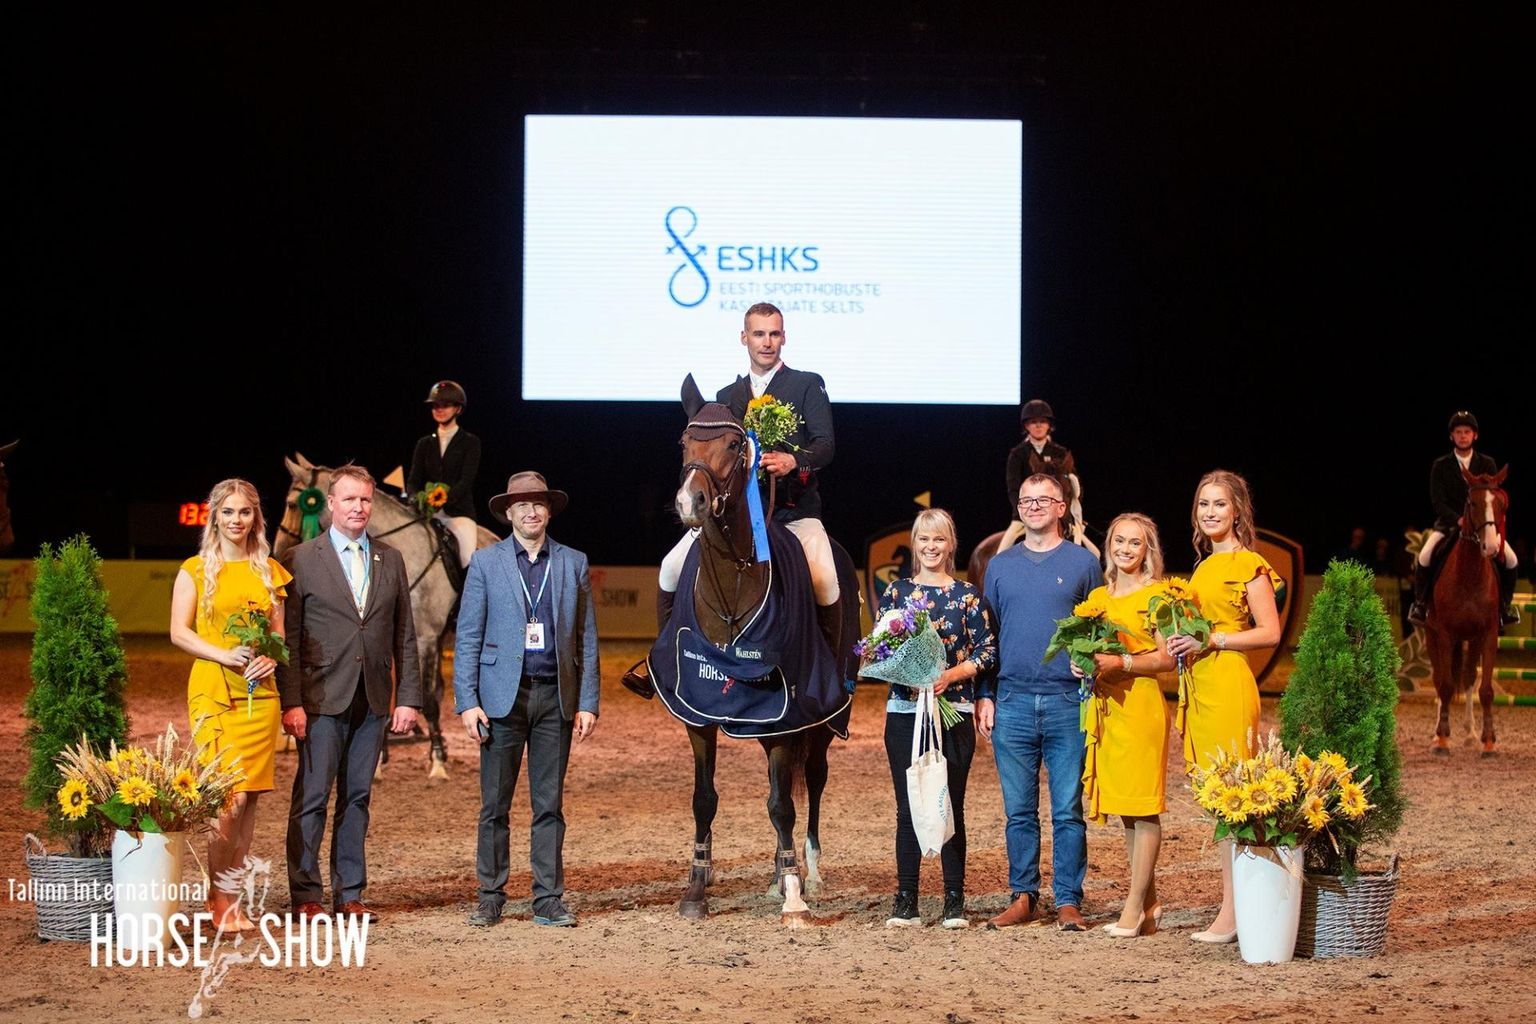 Autasustamisel olid aukohal Chanelle koos Paul Argusega ja hobuse omanik Liinu Vaan (hobusest paremal).